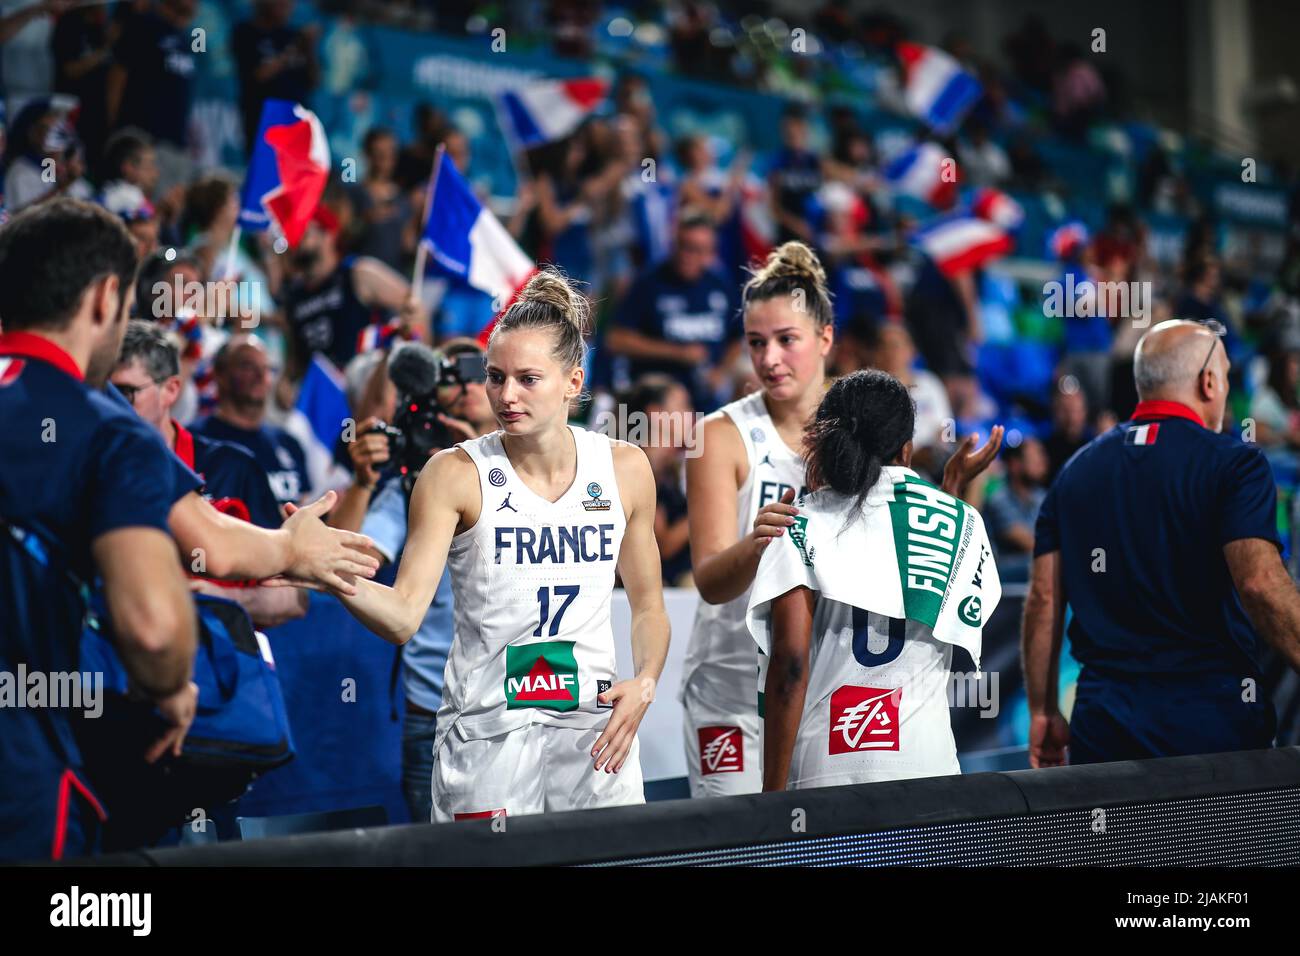 Espagne, Ténérife, 22 septembre 2018 : équipe nationale féminine de basket-ball française lors de la coupe du monde féminine de basket-ball de la FIBA Banque D'Images